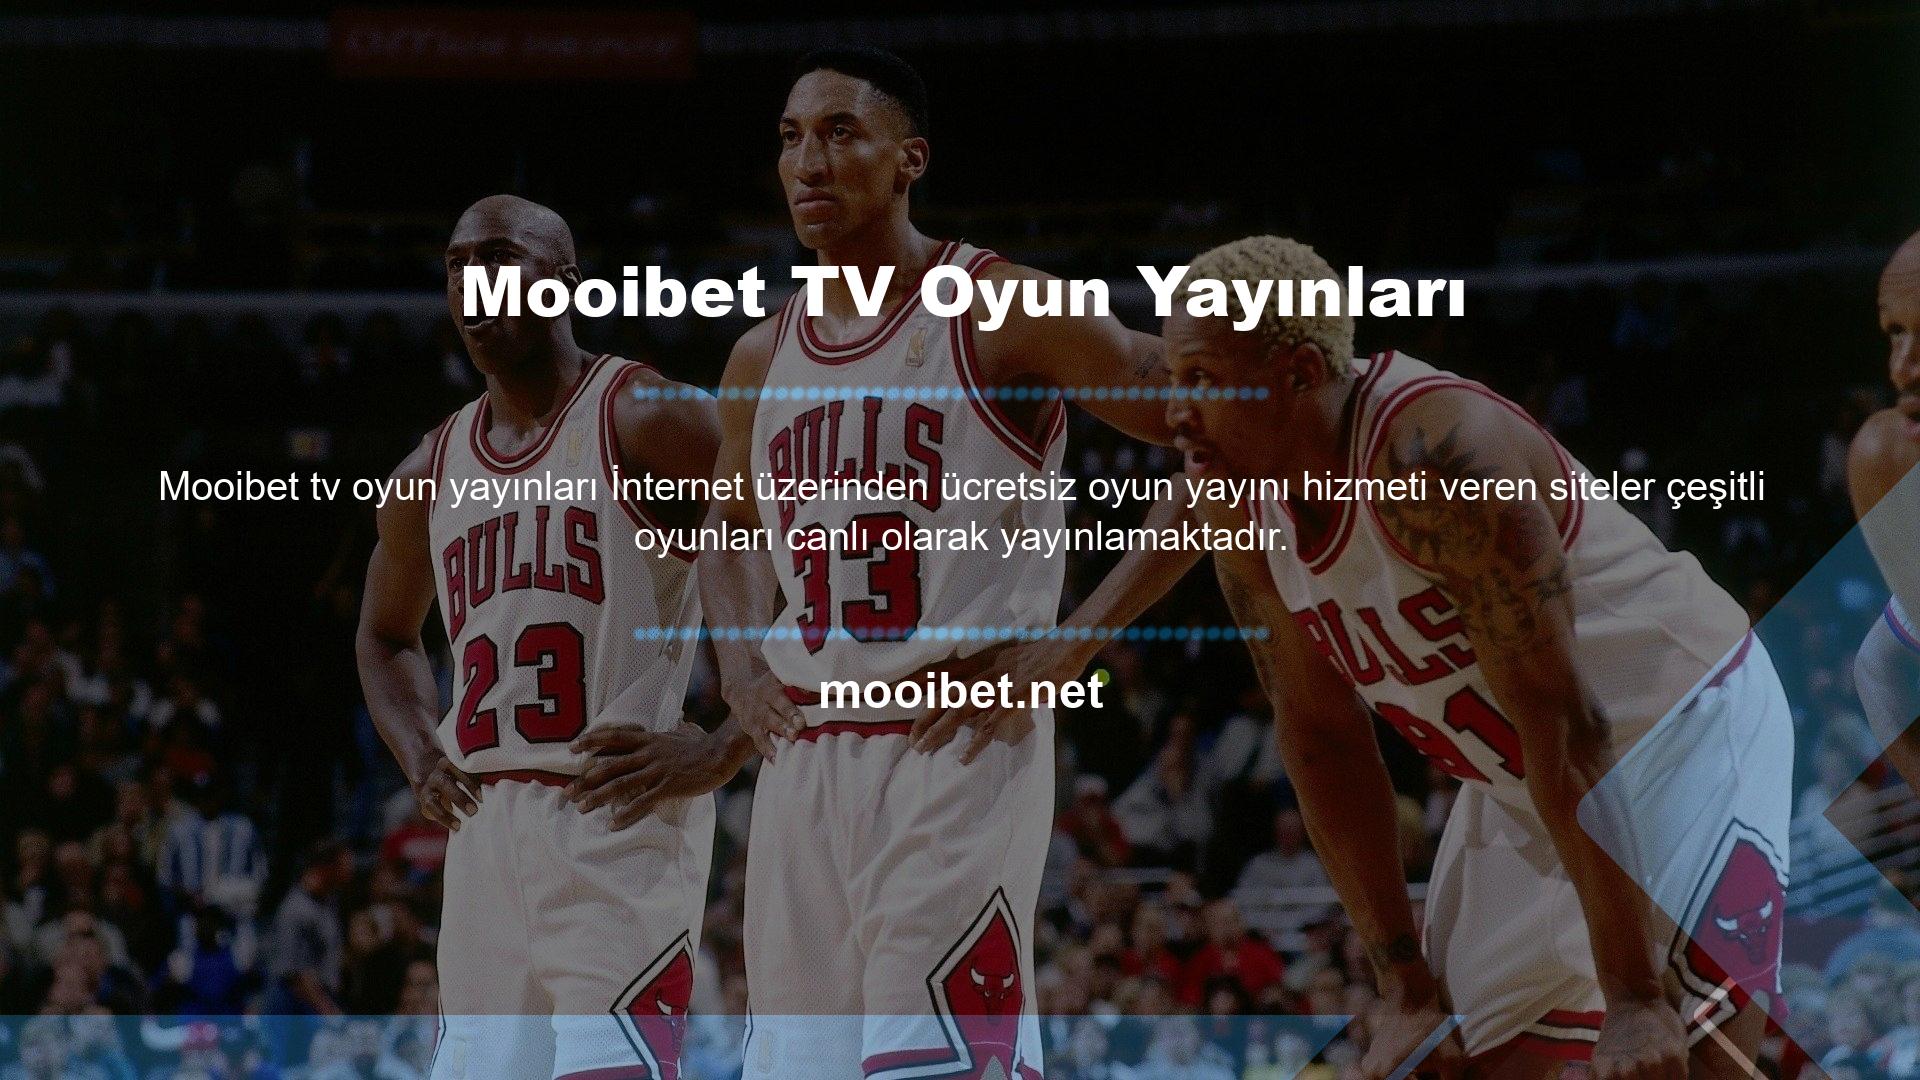 Mooibet TV web sitesi, bahis sitesinin spor bahisleri bölümünde tüm bahis seçenekleri için canlı maç yayını sunmaktadır